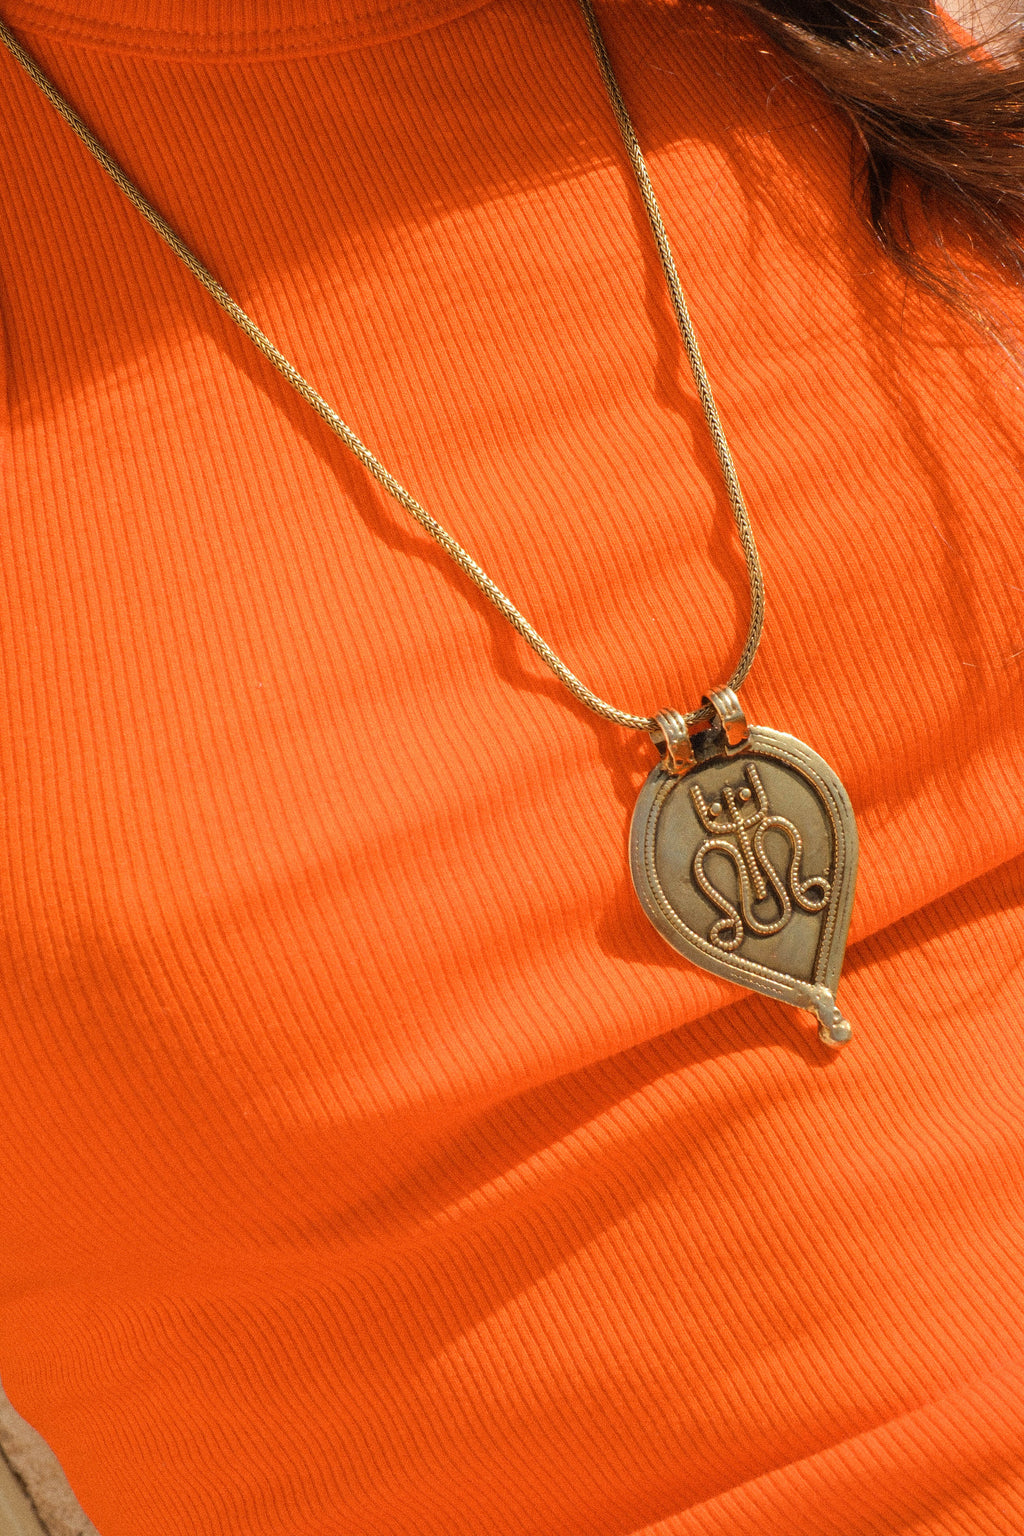 Antiguo amuleto de India en plata dorada con una serpiente y un tridente, símbolos de Shiva, dios supremo del hinduismo que crea, protege y transforma el universo. La cadena artesanal hecha a mano con plata de ley y baño de oro. Colgante.  Medidas 6 cm x 4 cm. Peso 13 g. Cadena. Longitud 66 cm. Grosor 2 mm Old Shiva amulet. Old indian amulets. Lula Máiz